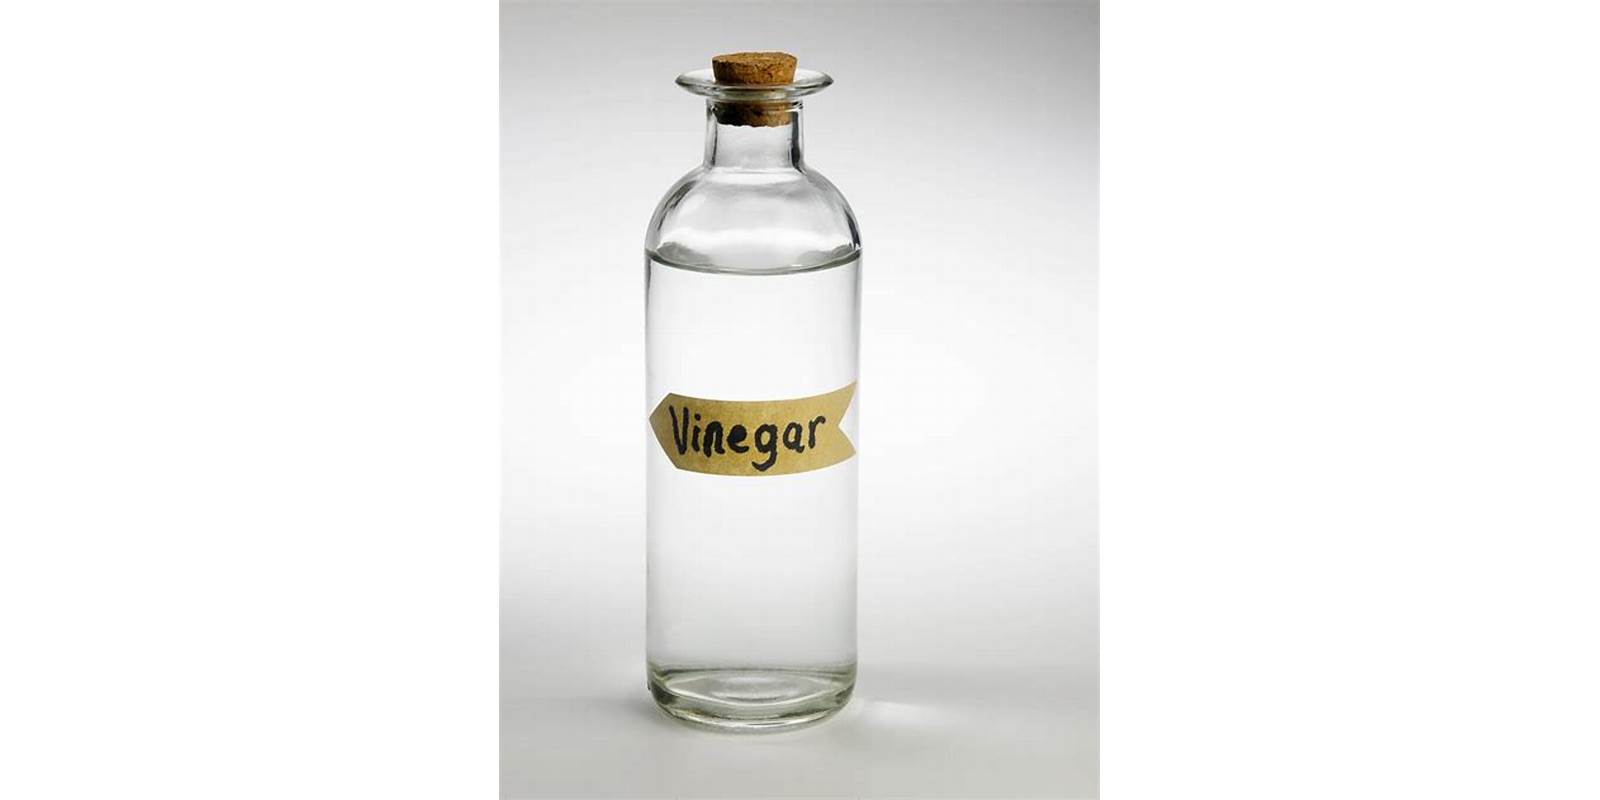 Vinegar